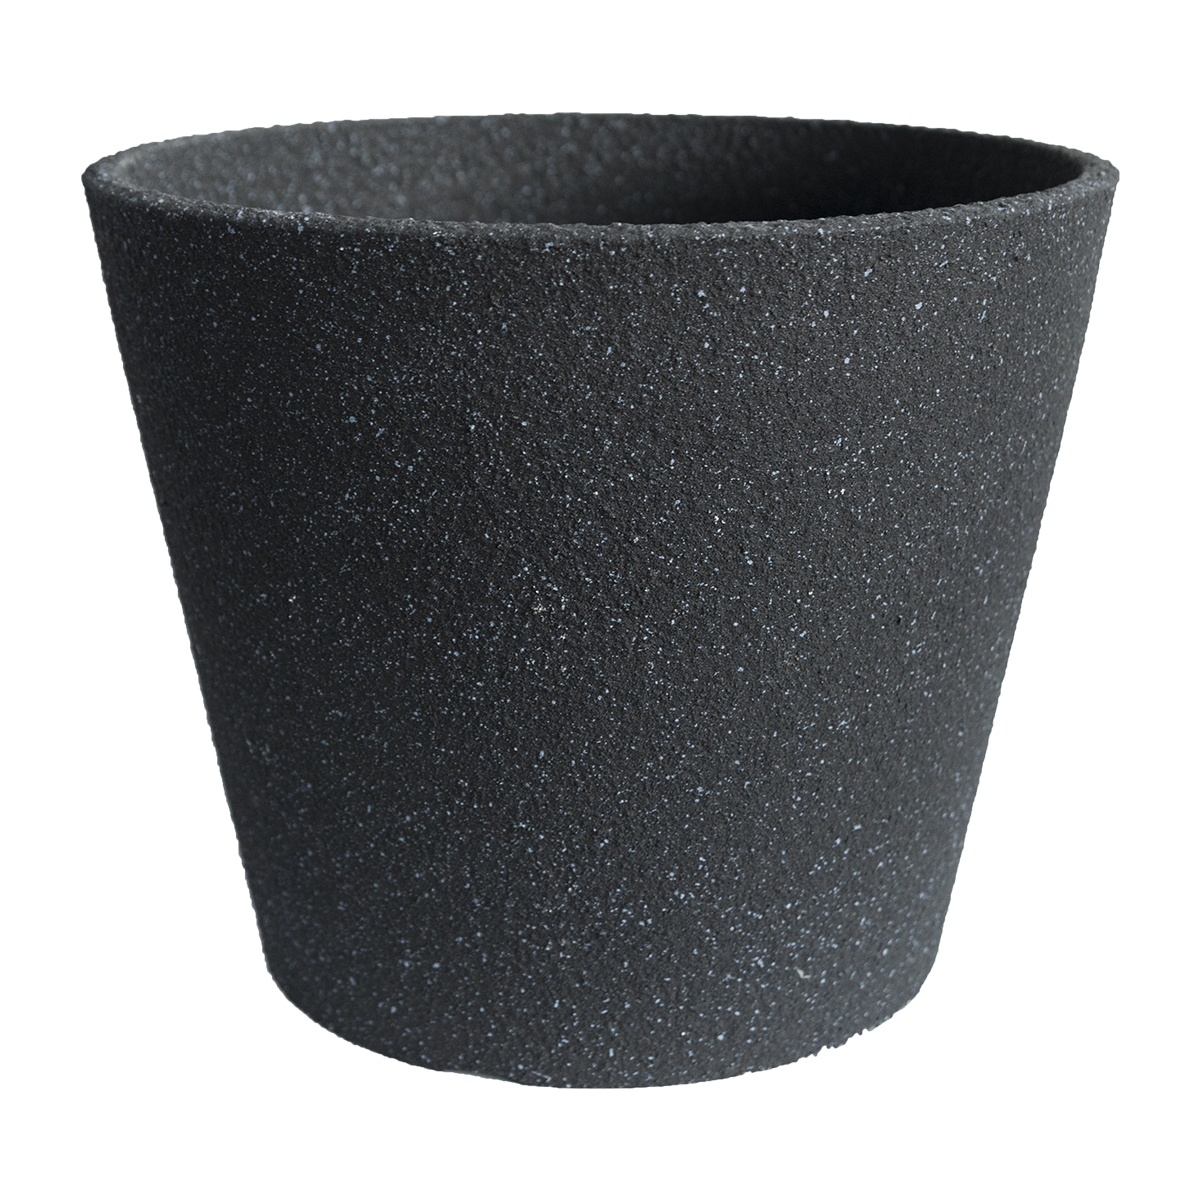 Large Minimalist Concrete Effect Plastic Pots for Plants